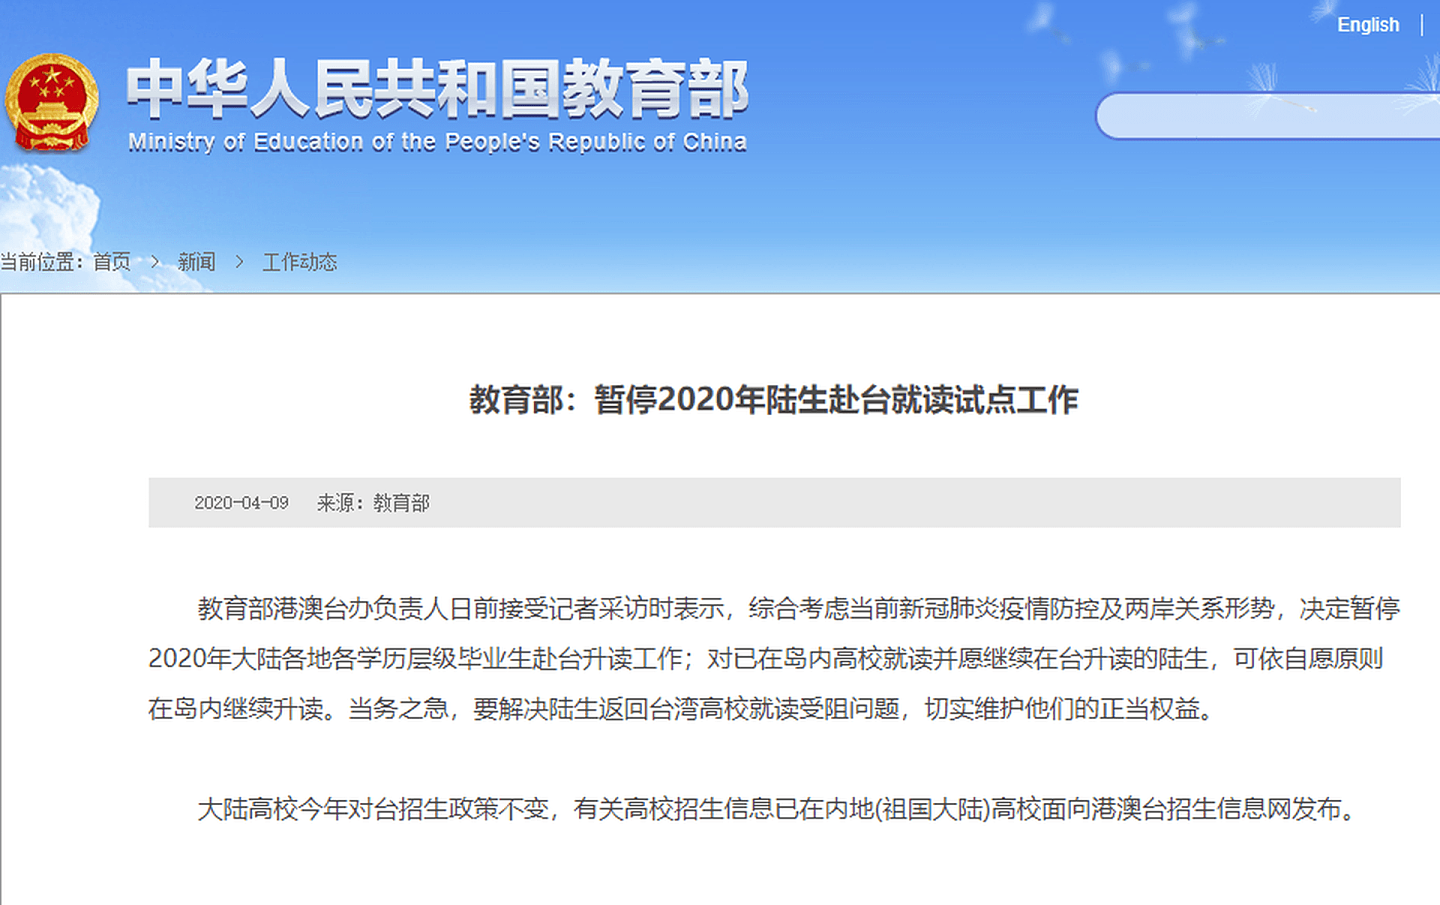 大陆教育部于北京时间4月9日发出布告，以“疫情防控”和“两岸关系形势”为由，暂停陆生赴台升学。陆方自2019年暂停陆客，到2020年暂停陆生，再到接下来ECFA十年期满存续，都能看出北京对台政策“推倒重来”的态势。（中国教育部网站）